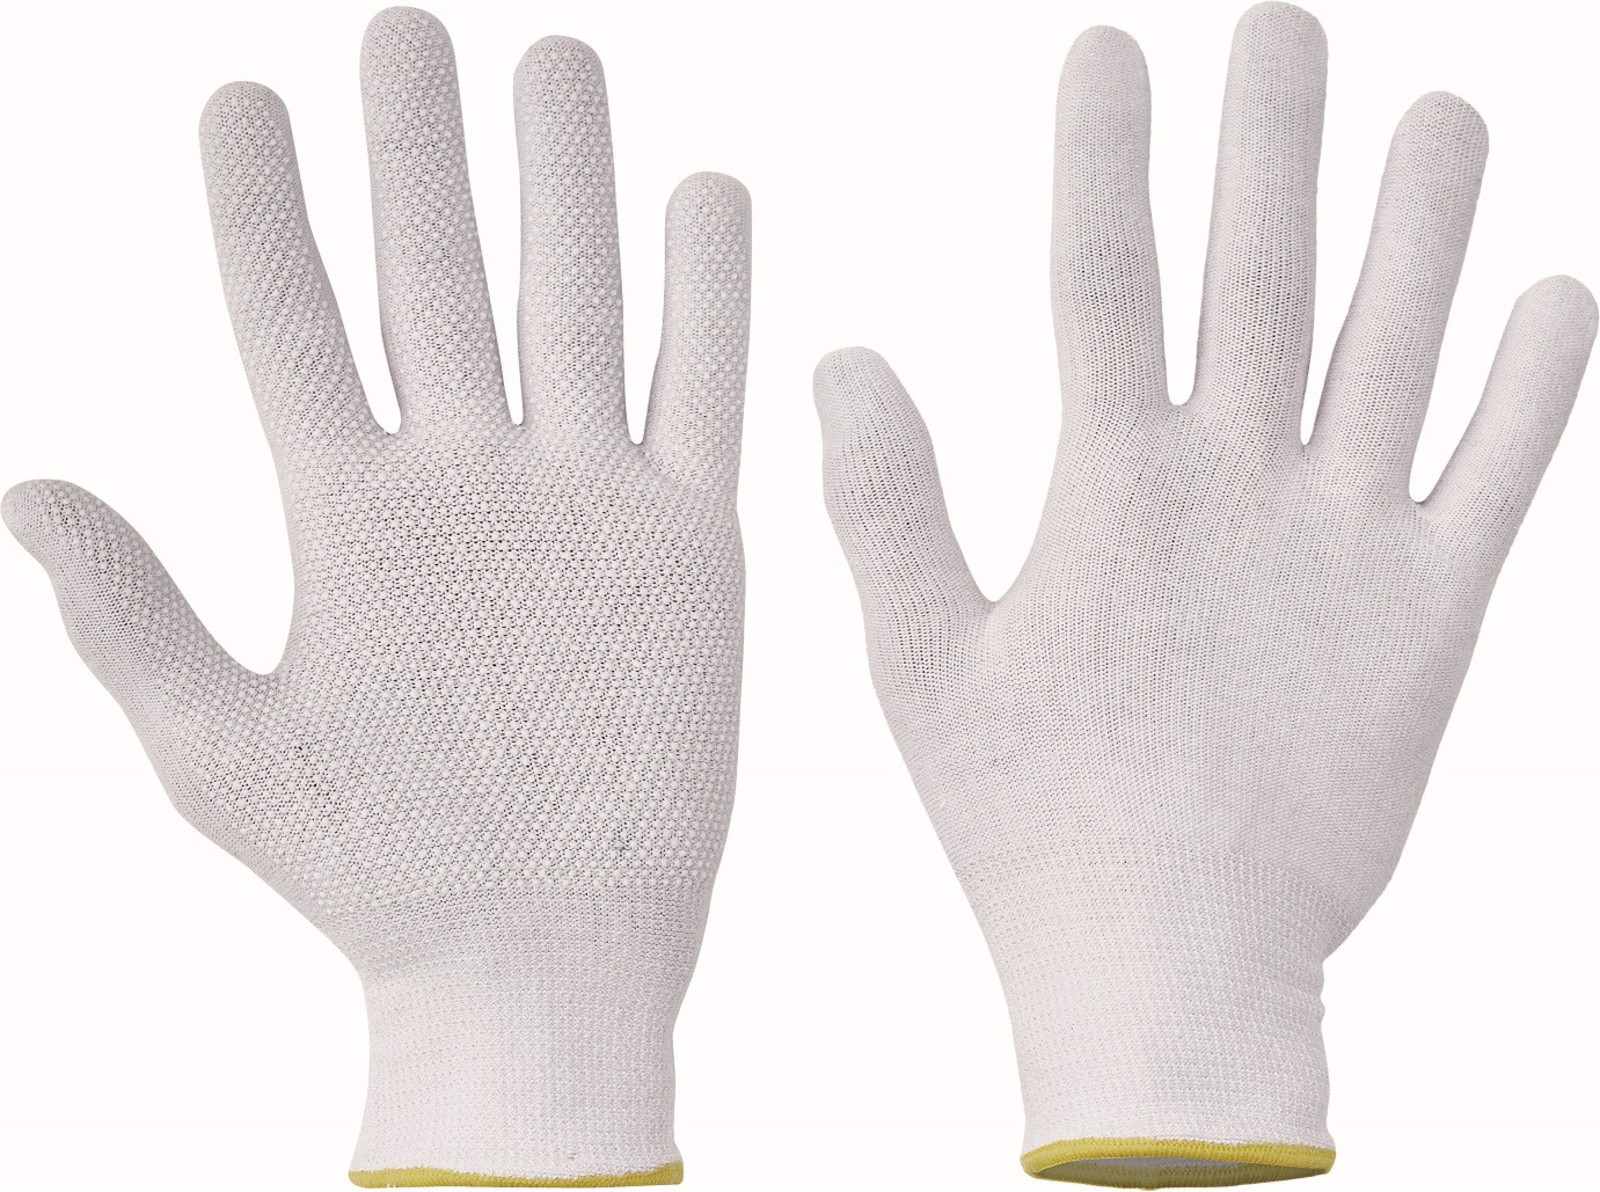 Pracovné rukavice Bustard Evo s terčíkmi - veľkosť: 9/L